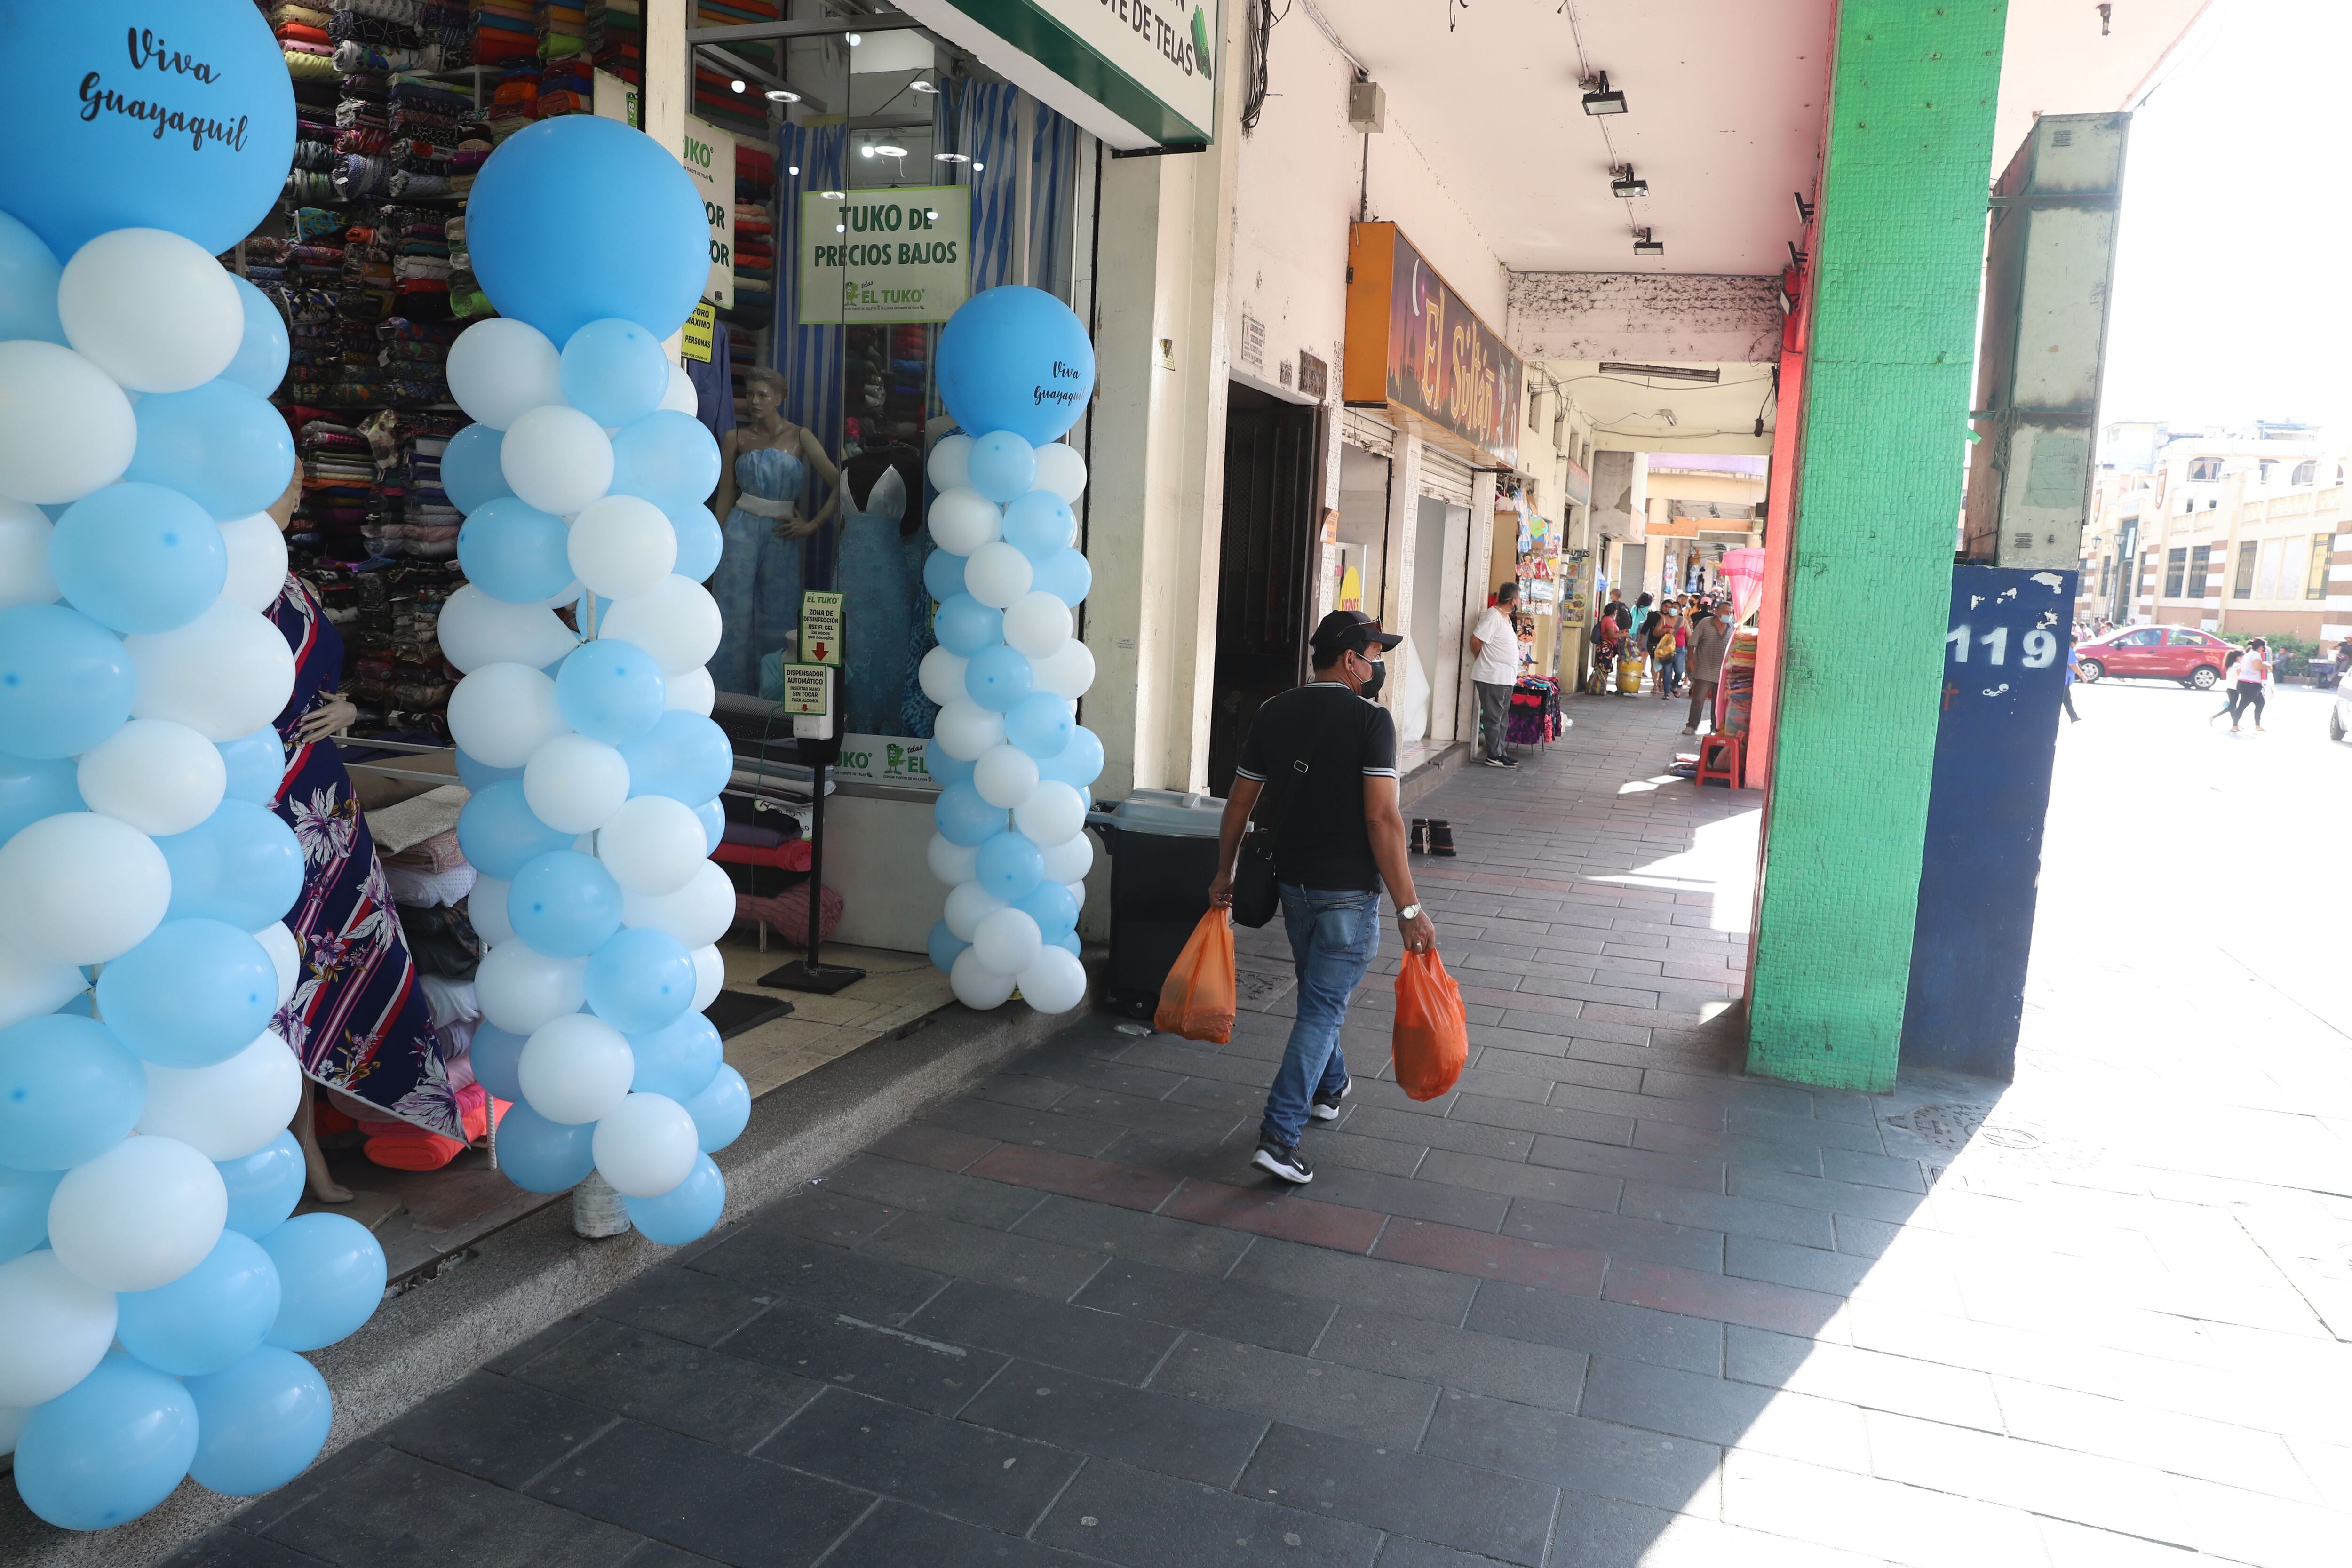 Con ofertas y decoraciones alusivas a las fiestas julianas en Guayaquil, los negocios buscan atraer más a su clientela, como ocurre en locales del centro de la ciudad. Foto: José Beltrán